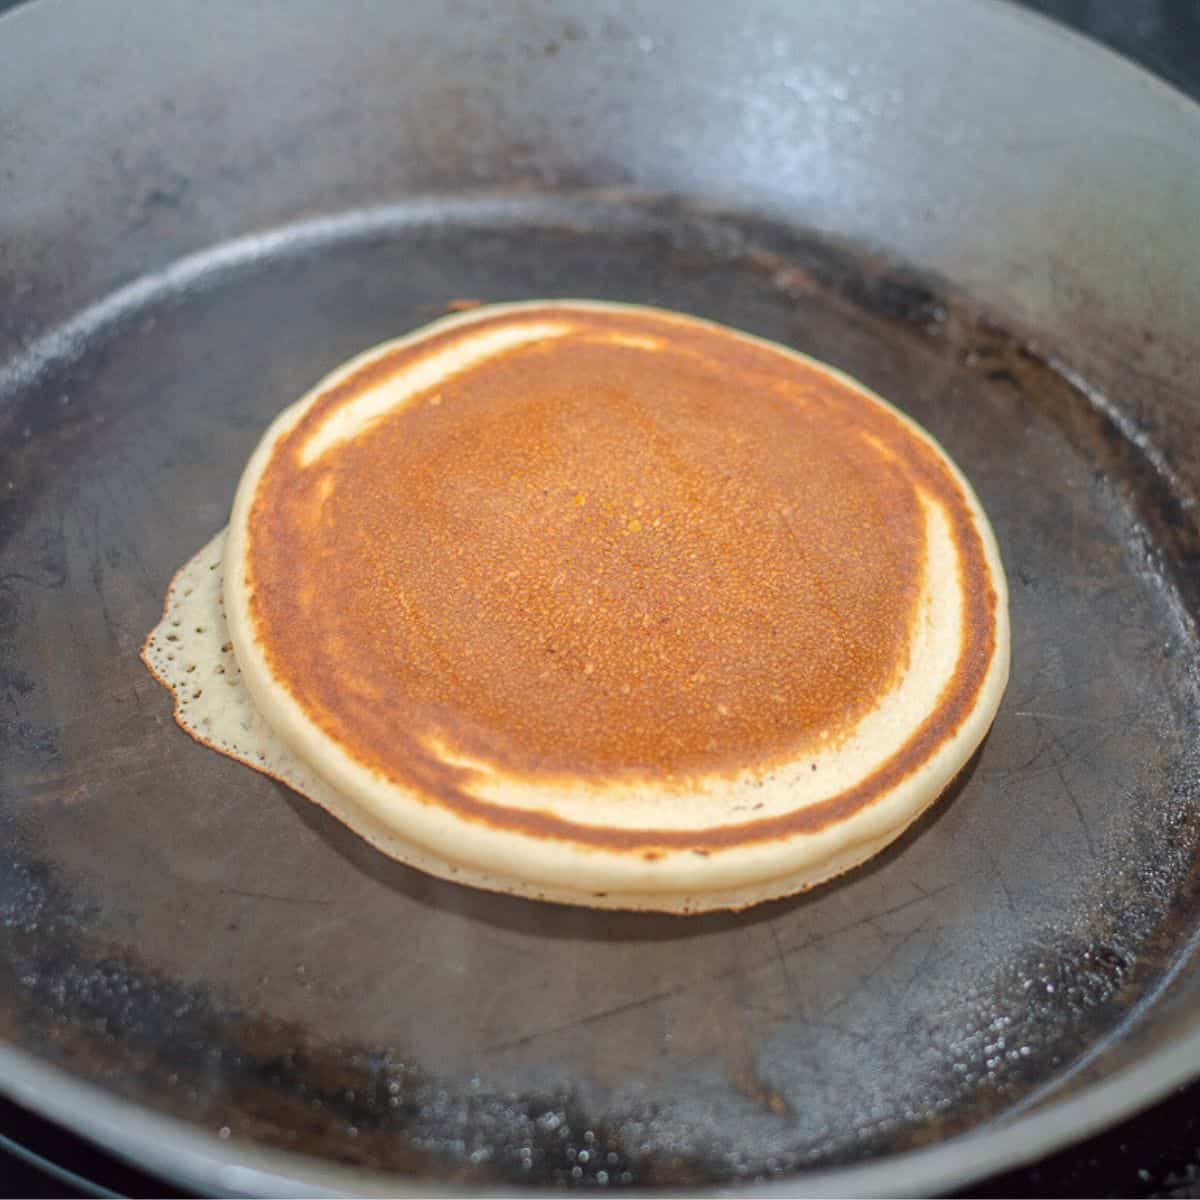 Pancake in a frying pan.